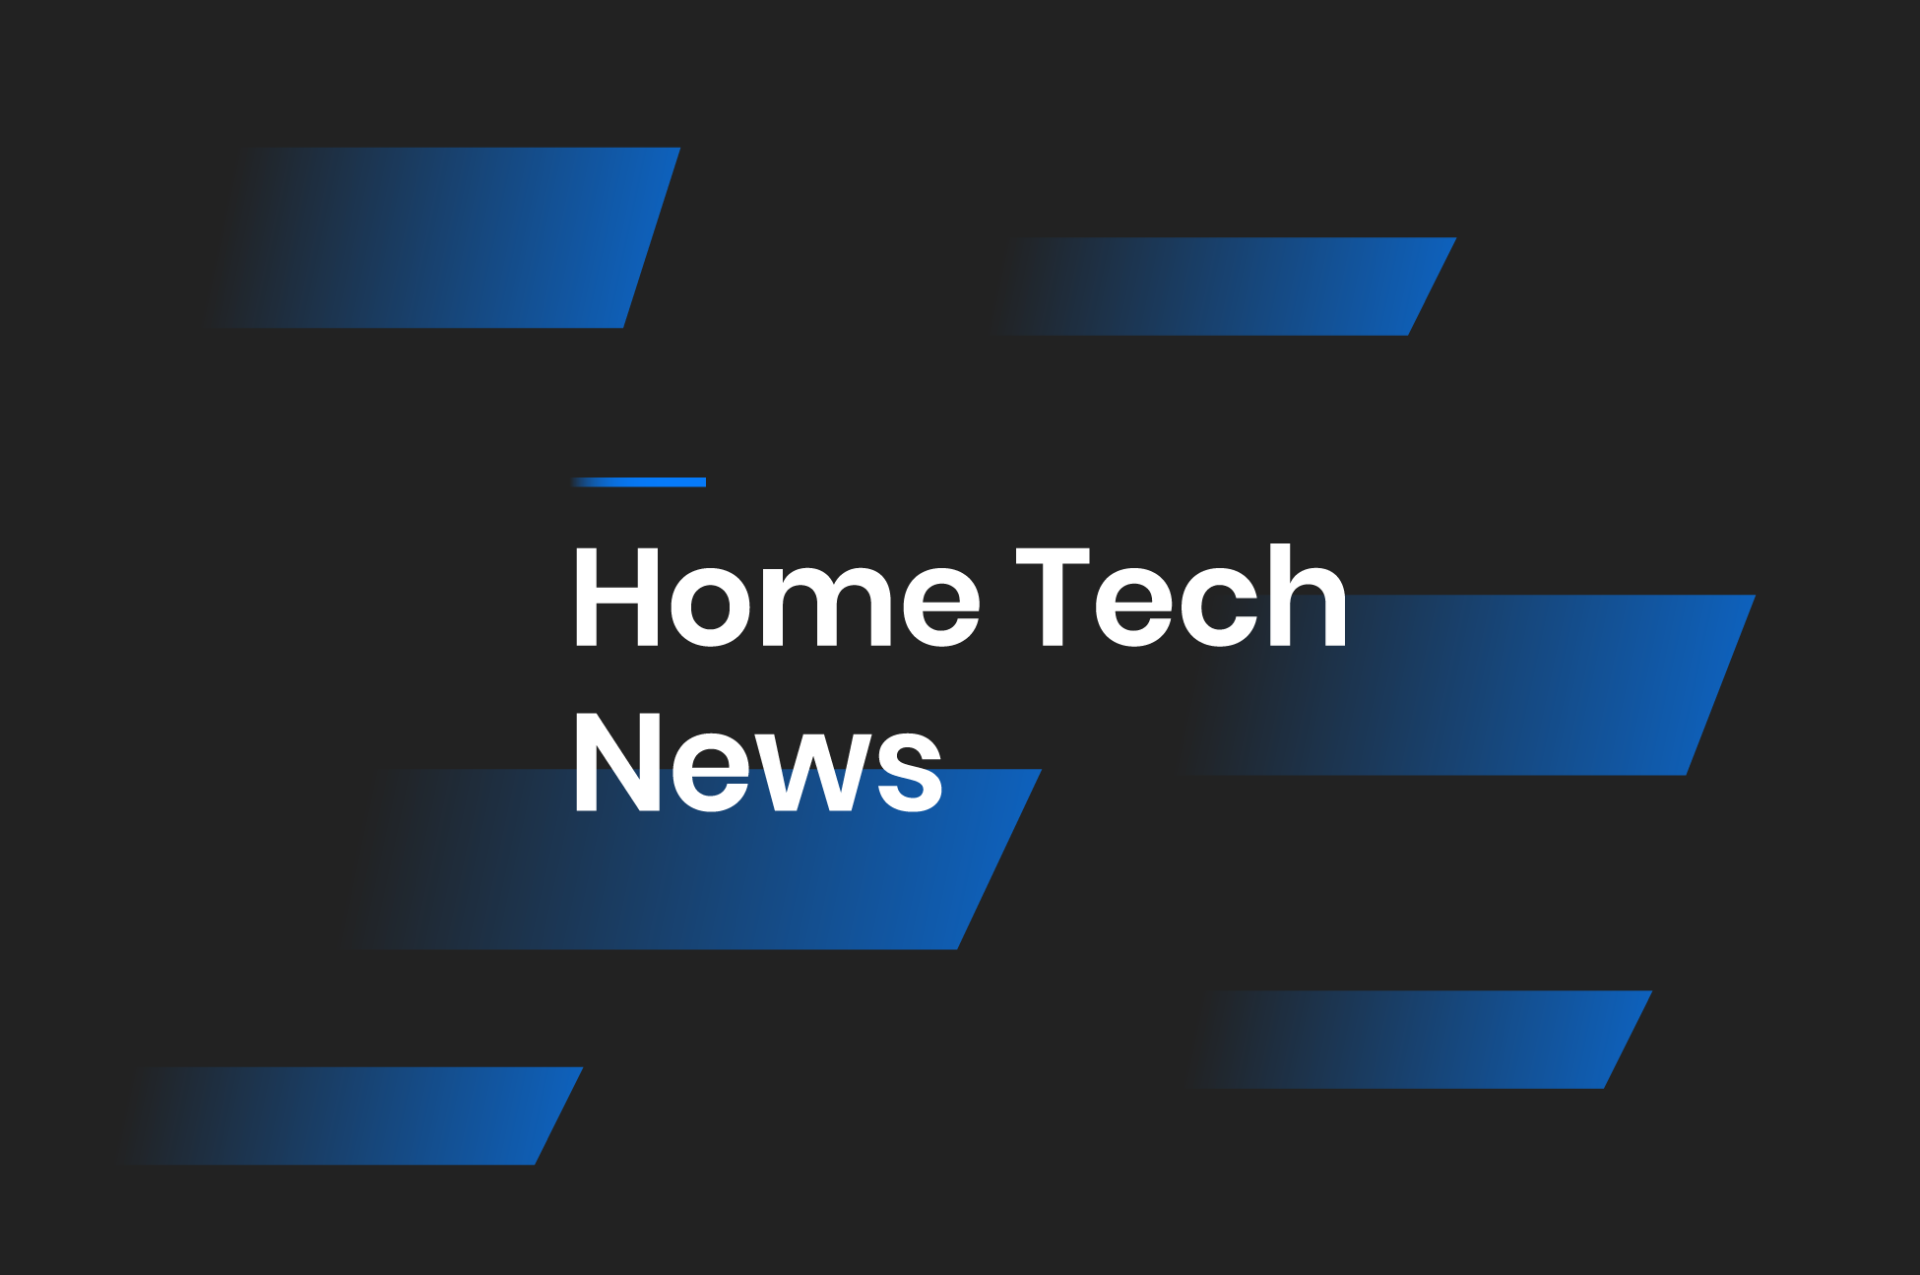 HomeTech Blog news cover image